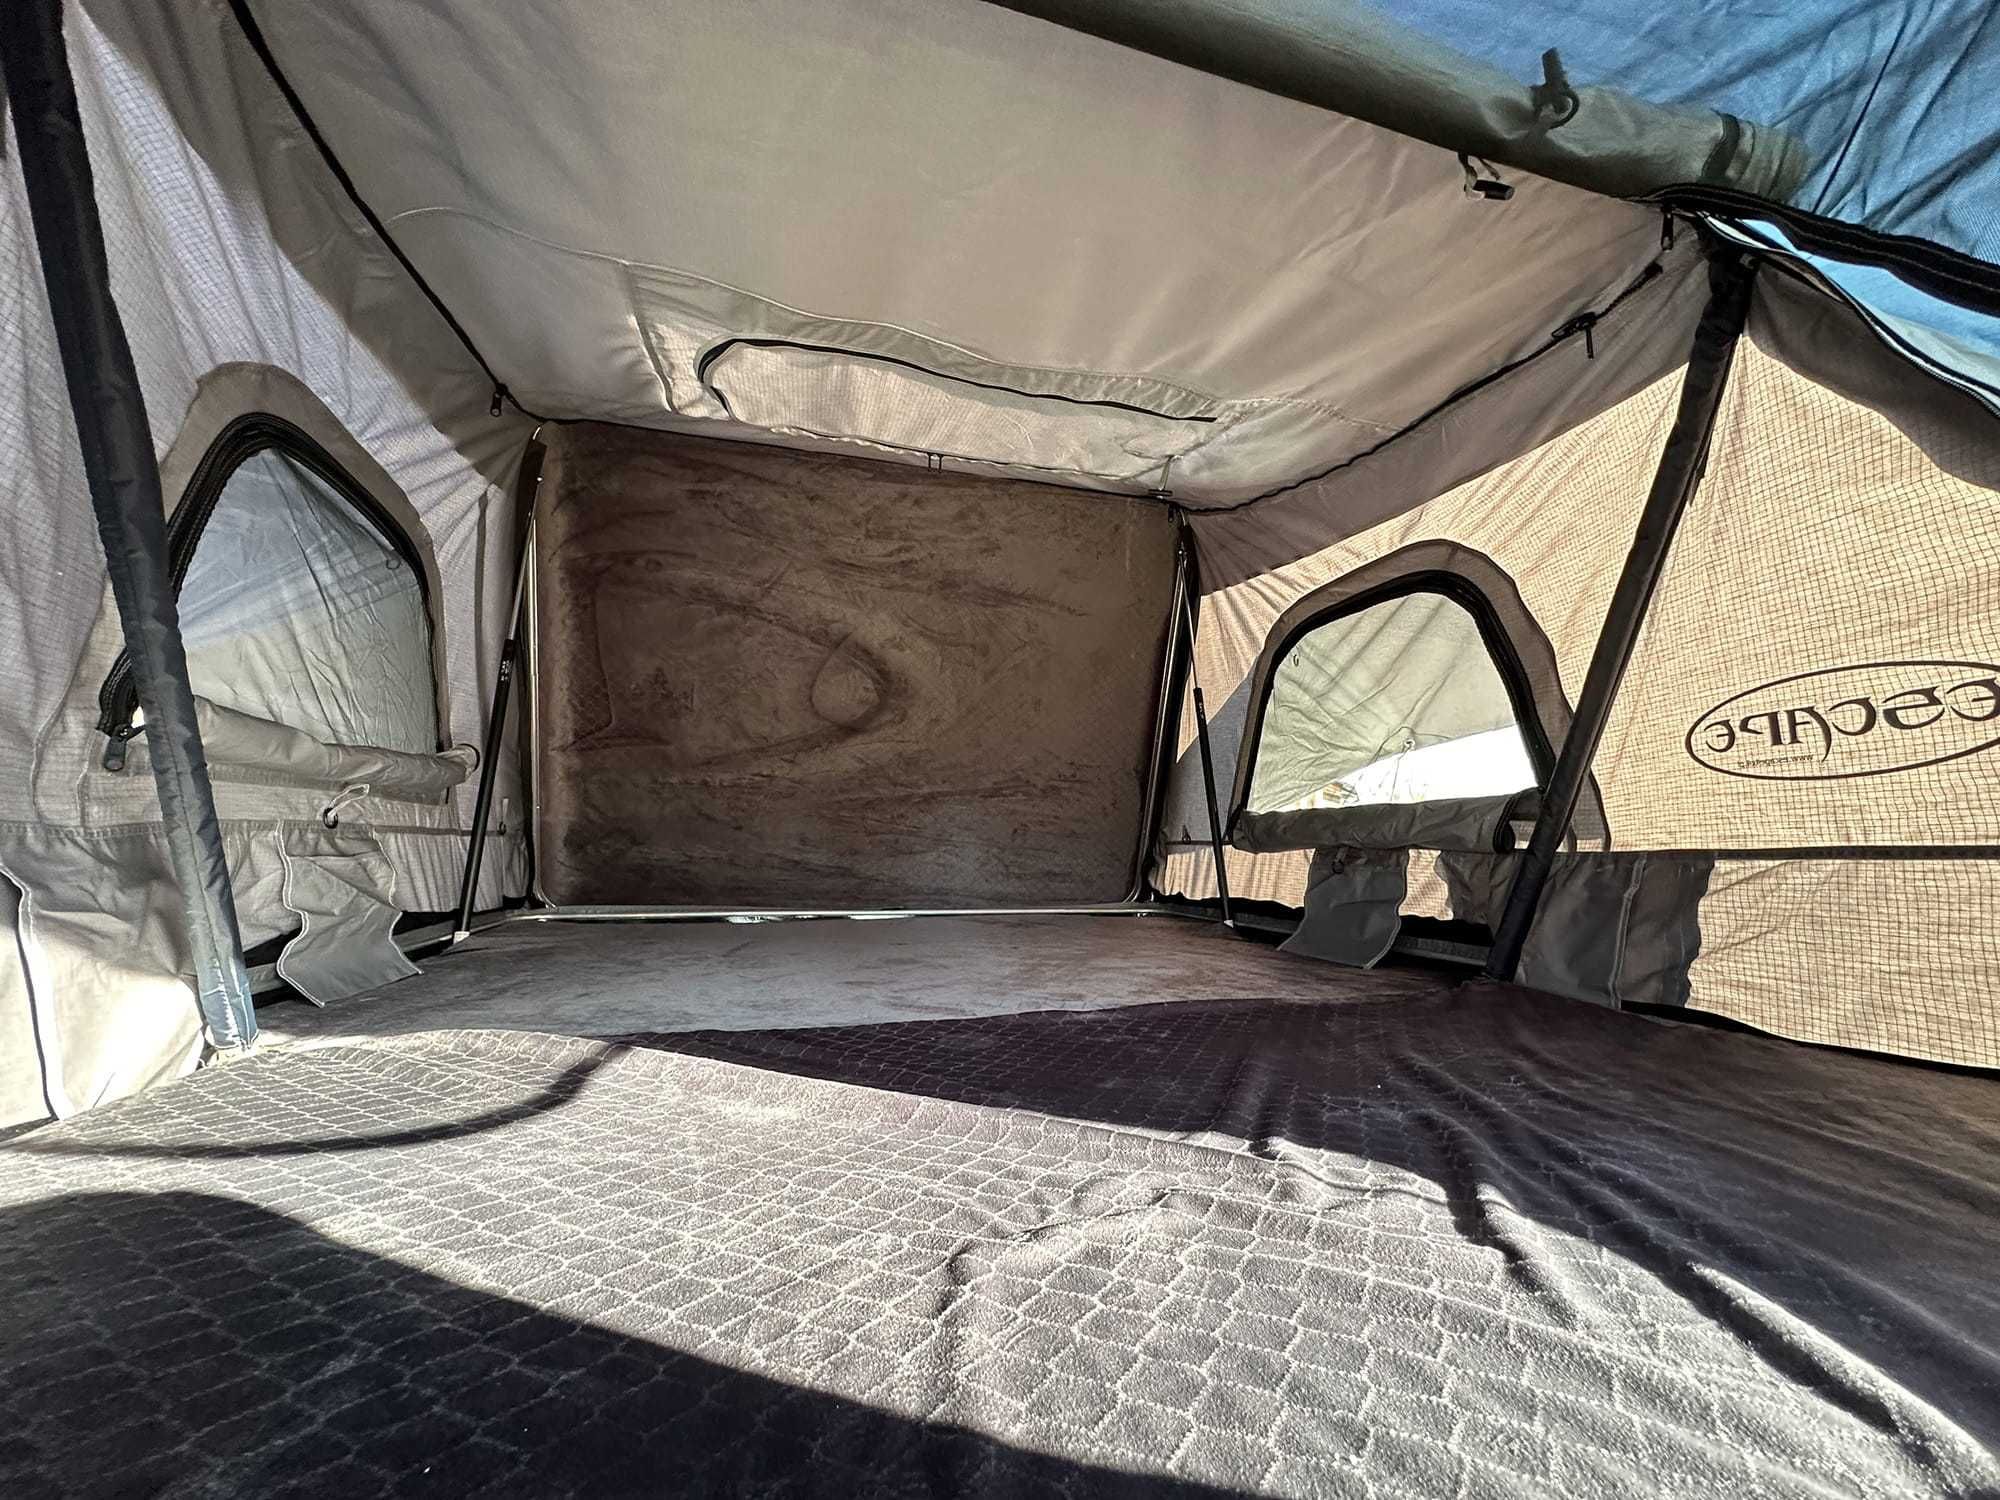 Namiot dachowy Escape VARIO 210 cm